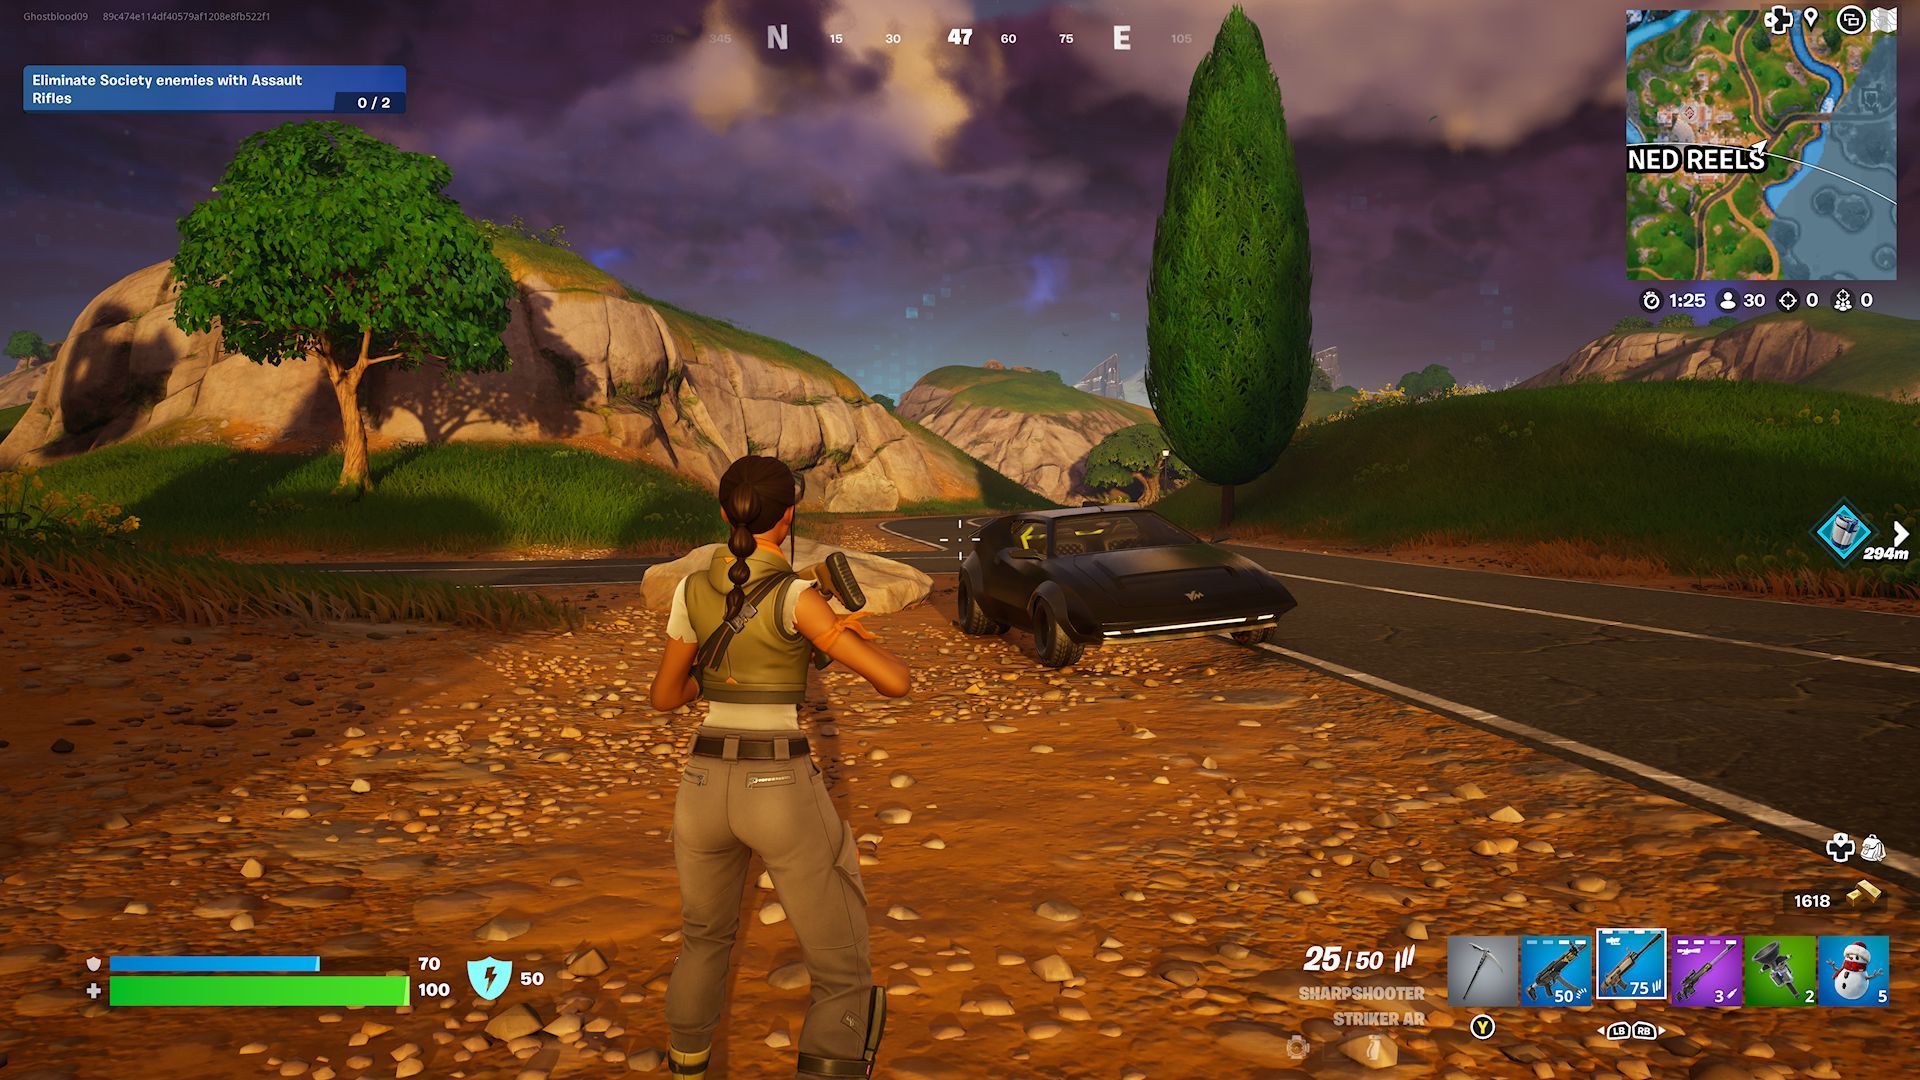 Ein Spieler steht vor einem geparkten Whiplash am Straßenrand in der Nähe von Ruined Reels in Fortnite.